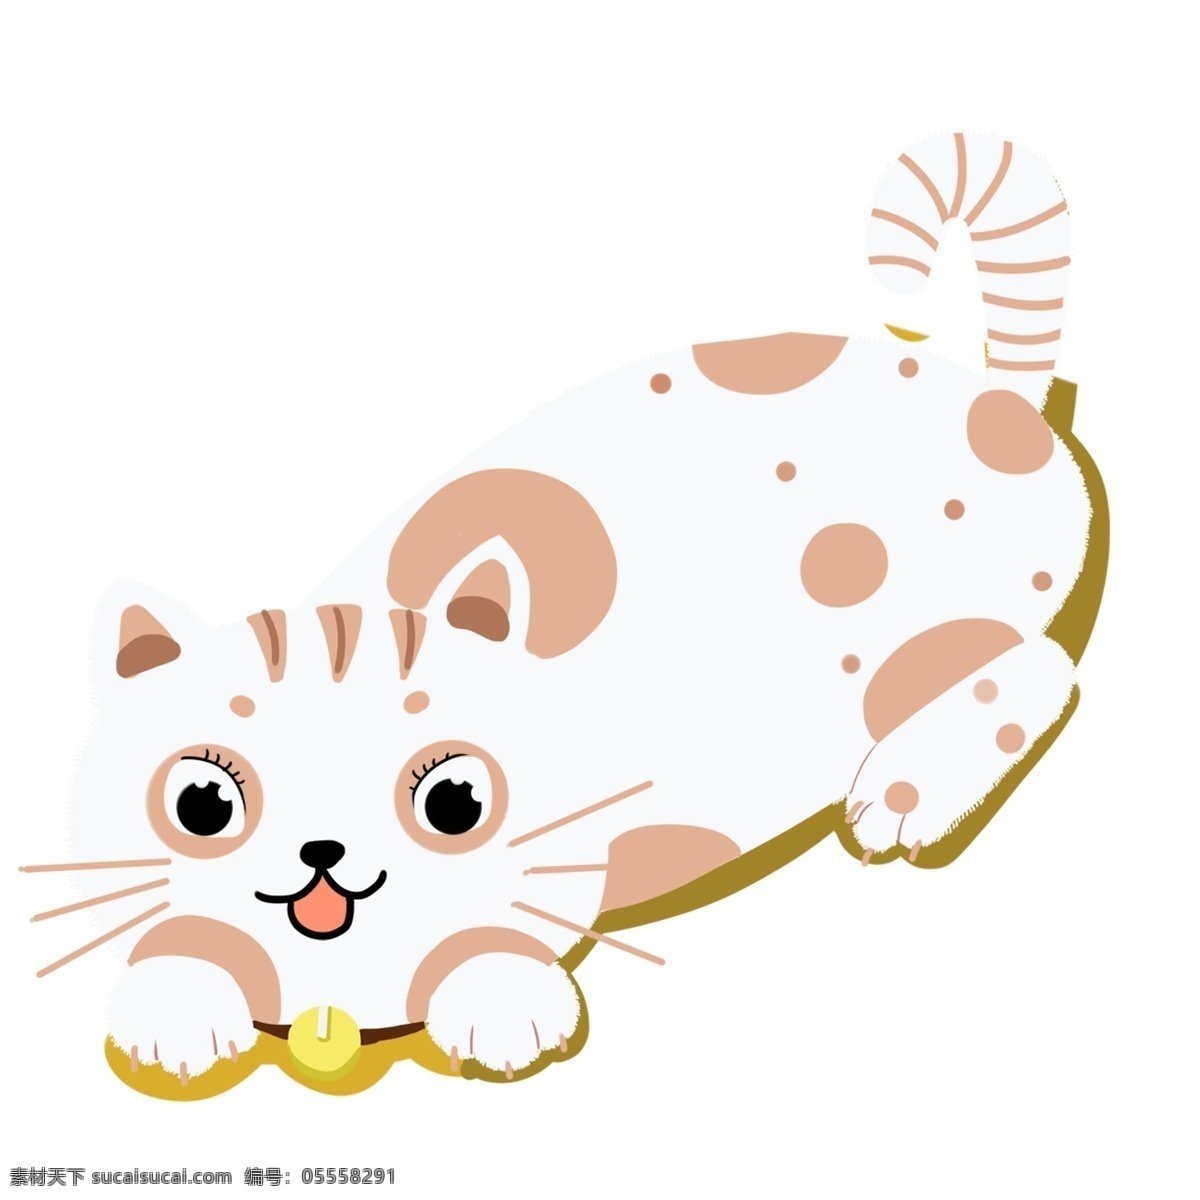 可爱 呆 萌 小 猫咪 图案 花猫 动物 手绘 绘画 简约 创意 小清新 装饰 水彩 插画